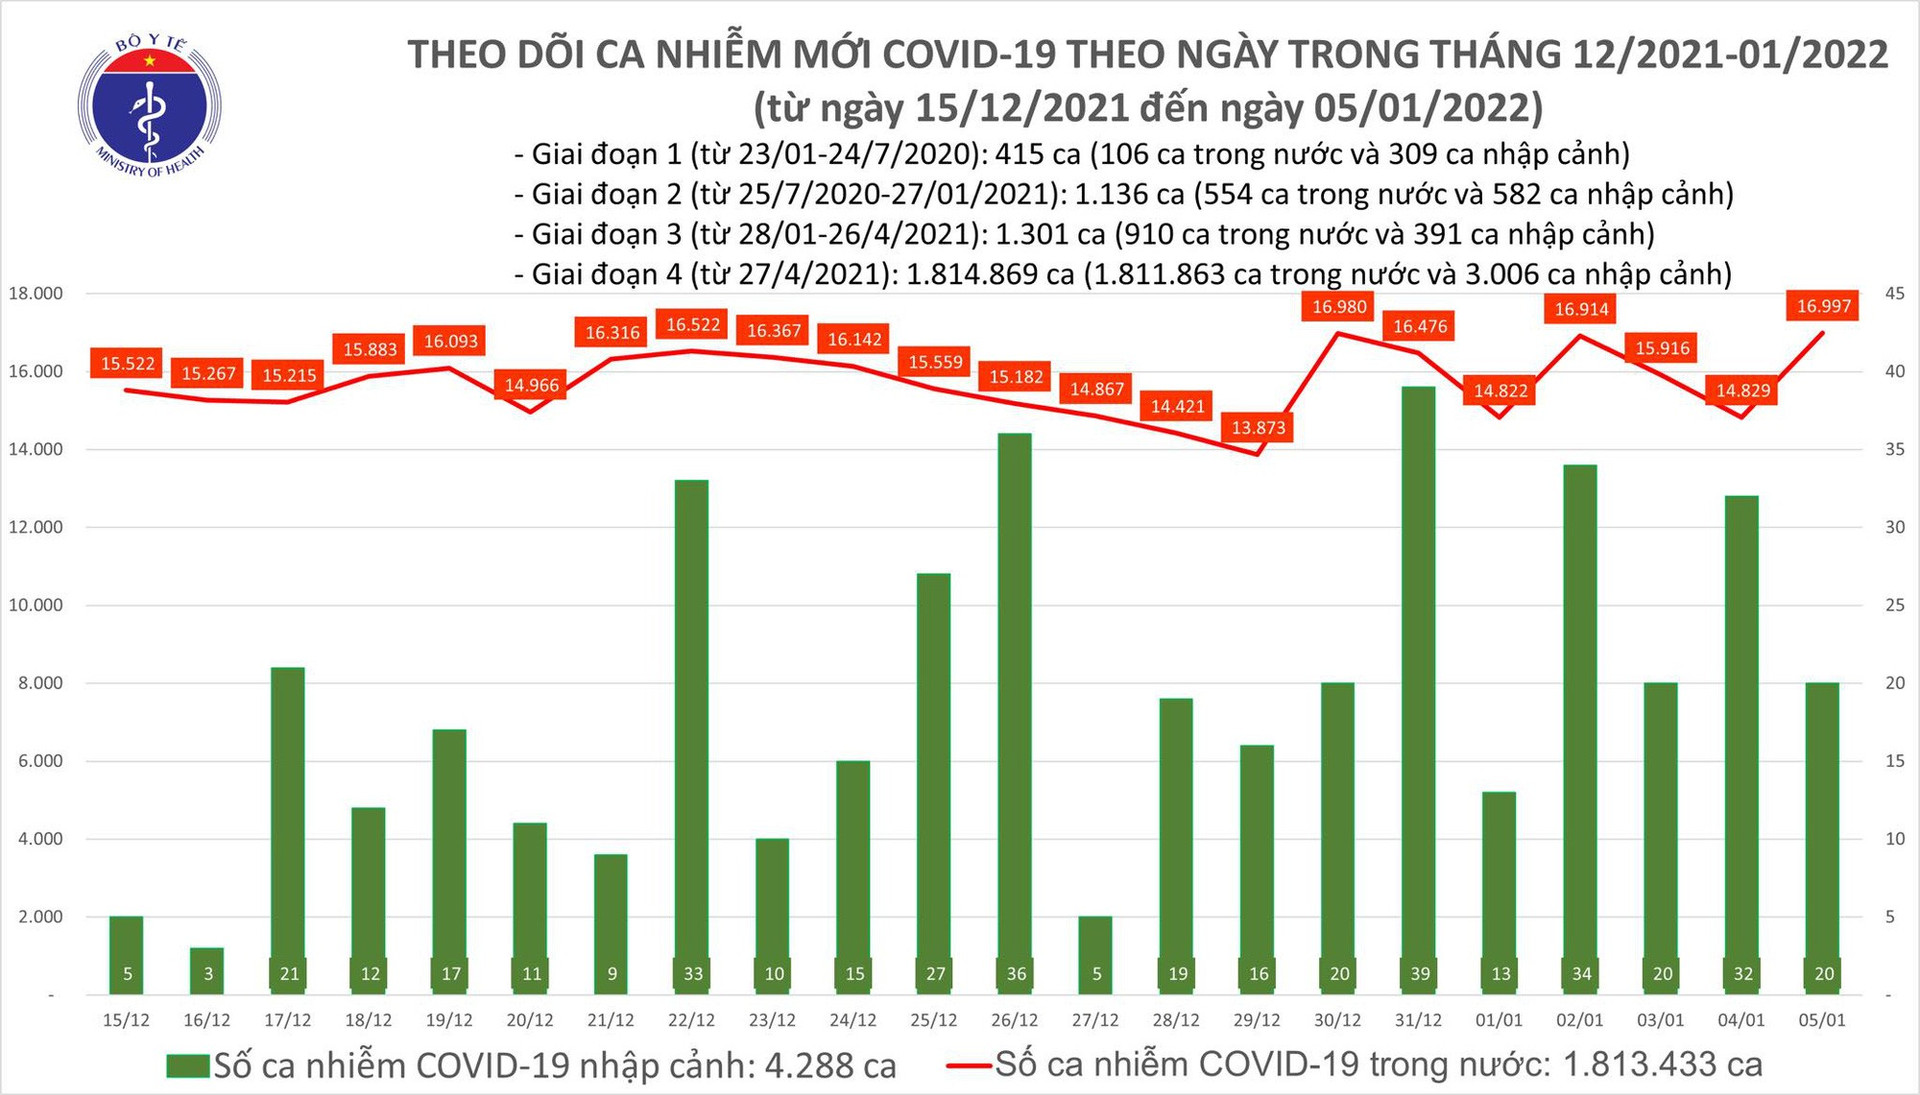 Ngày 5/1: Cả nước có 17.017 ca mắc COVID-19, Hà Nội vẫn nhiều nhất với 2.505 ca  - Ảnh 1.